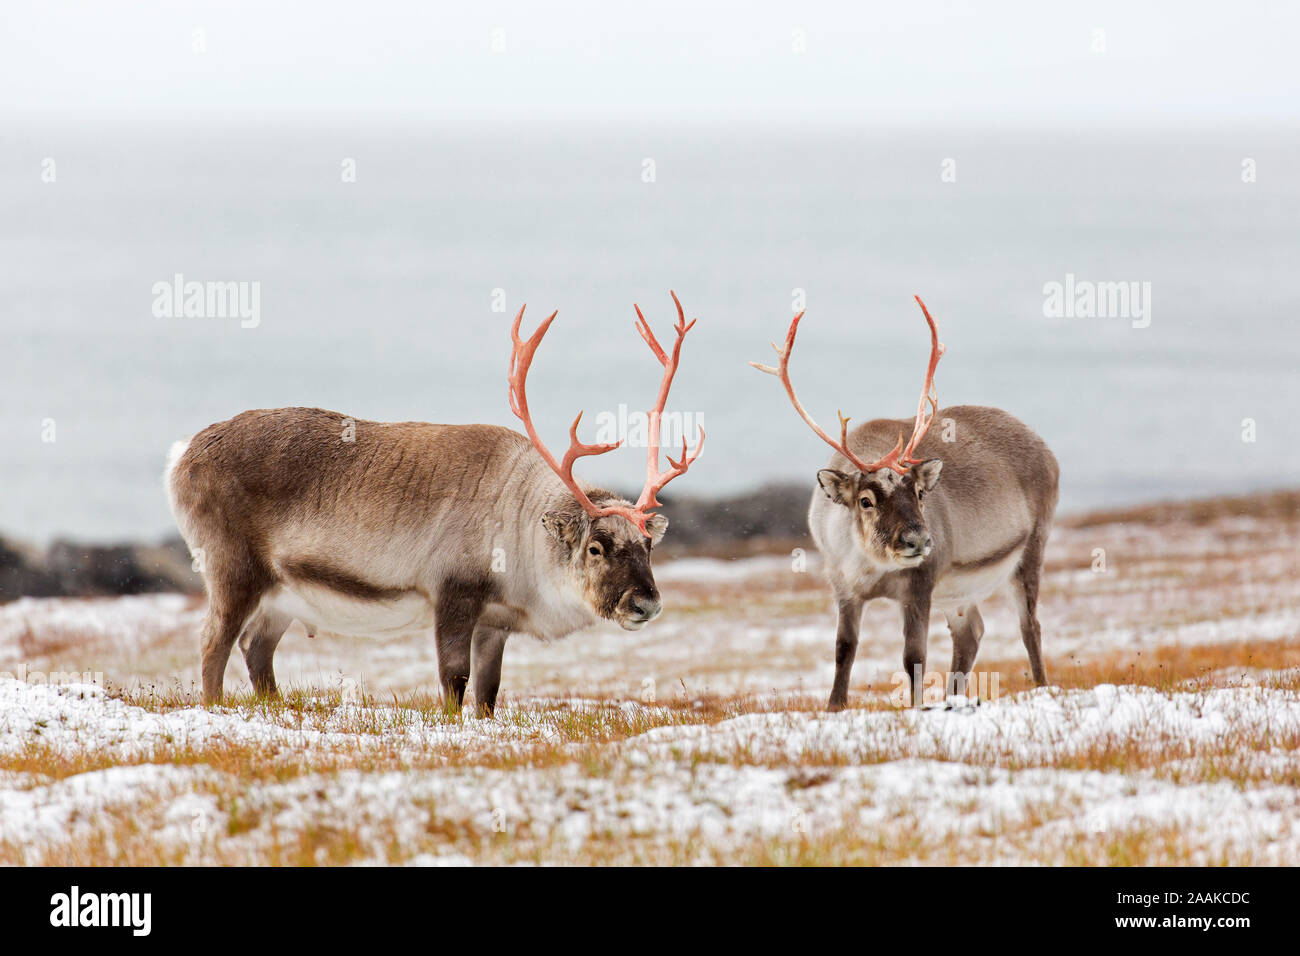 Deux renne du Svalbard (Rangifer tarandus platyrhynchus) hommes / bulls taille les uns les autres avant la bataille sur la toundra couvertes de neige en automne / fall, Norvège Banque D'Images